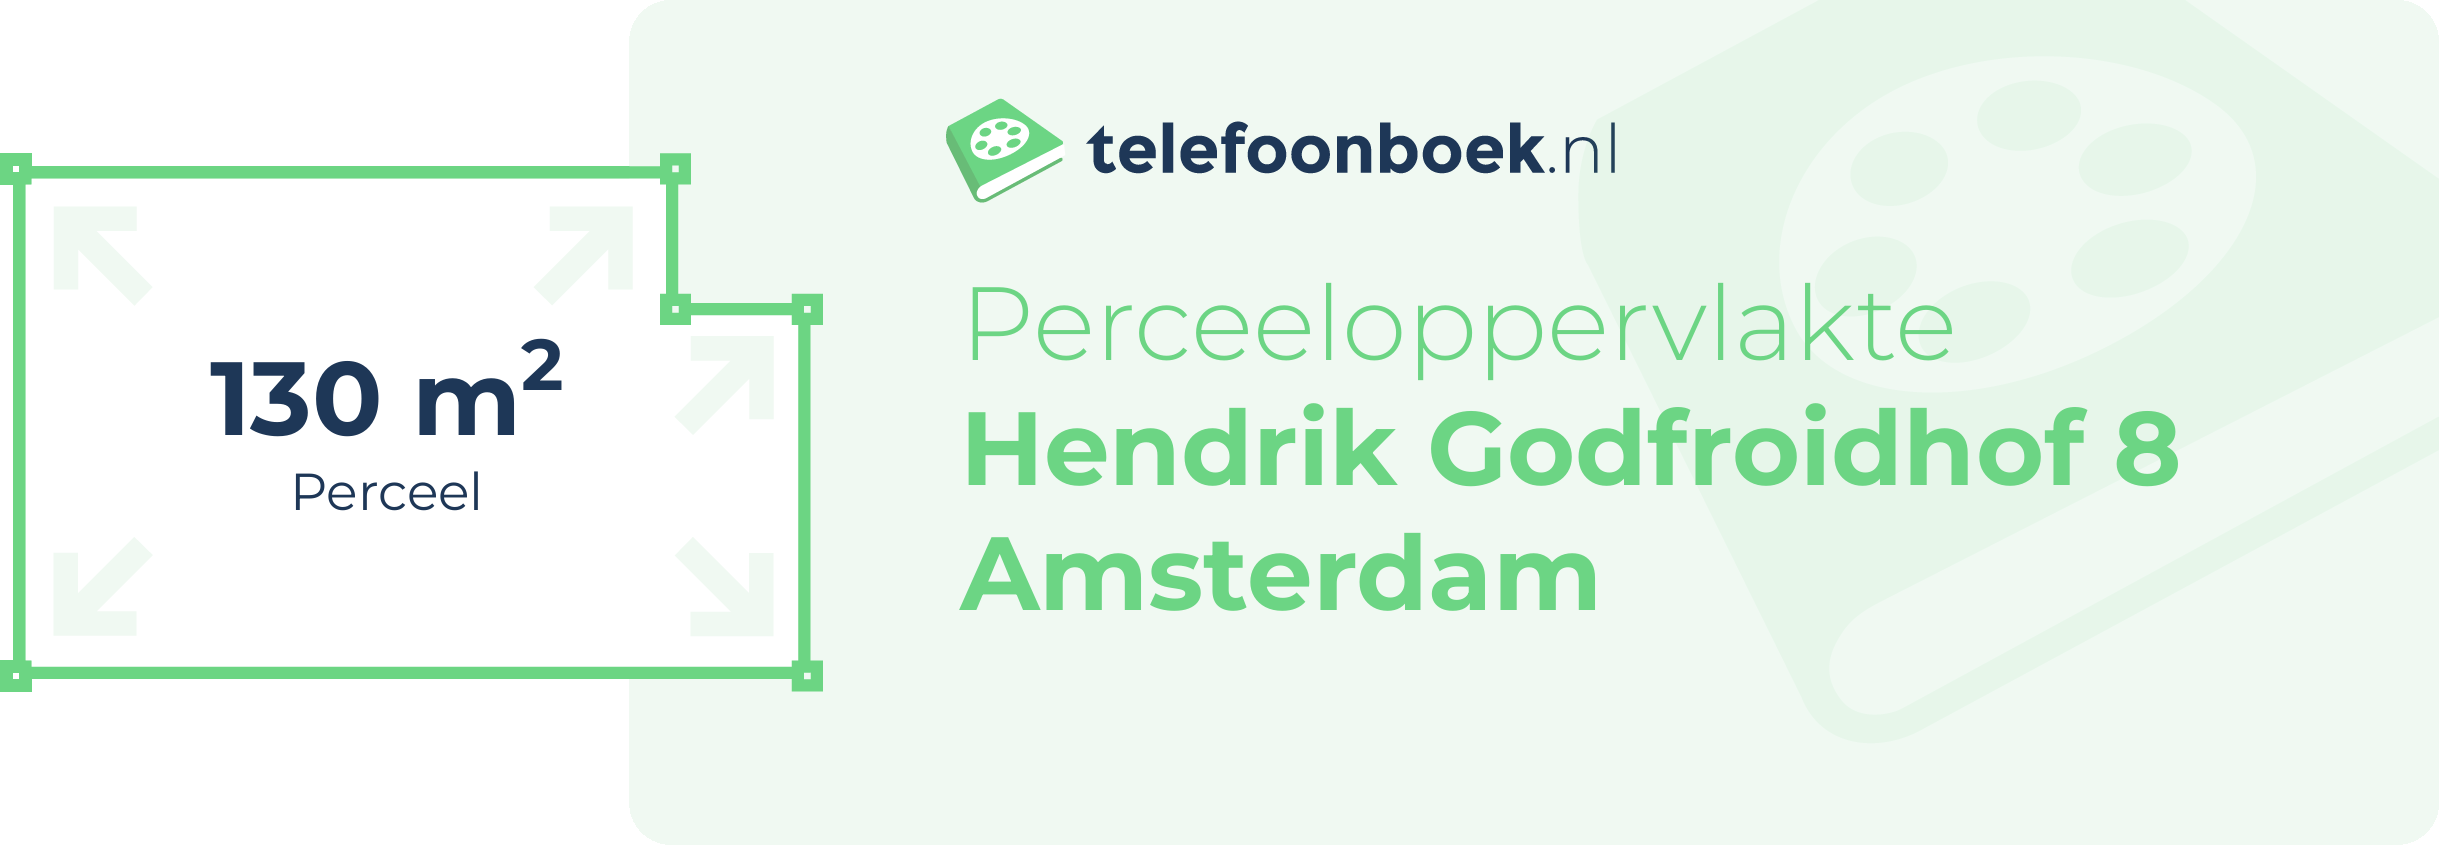 Perceeloppervlakte Hendrik Godfroidhof 8 Amsterdam